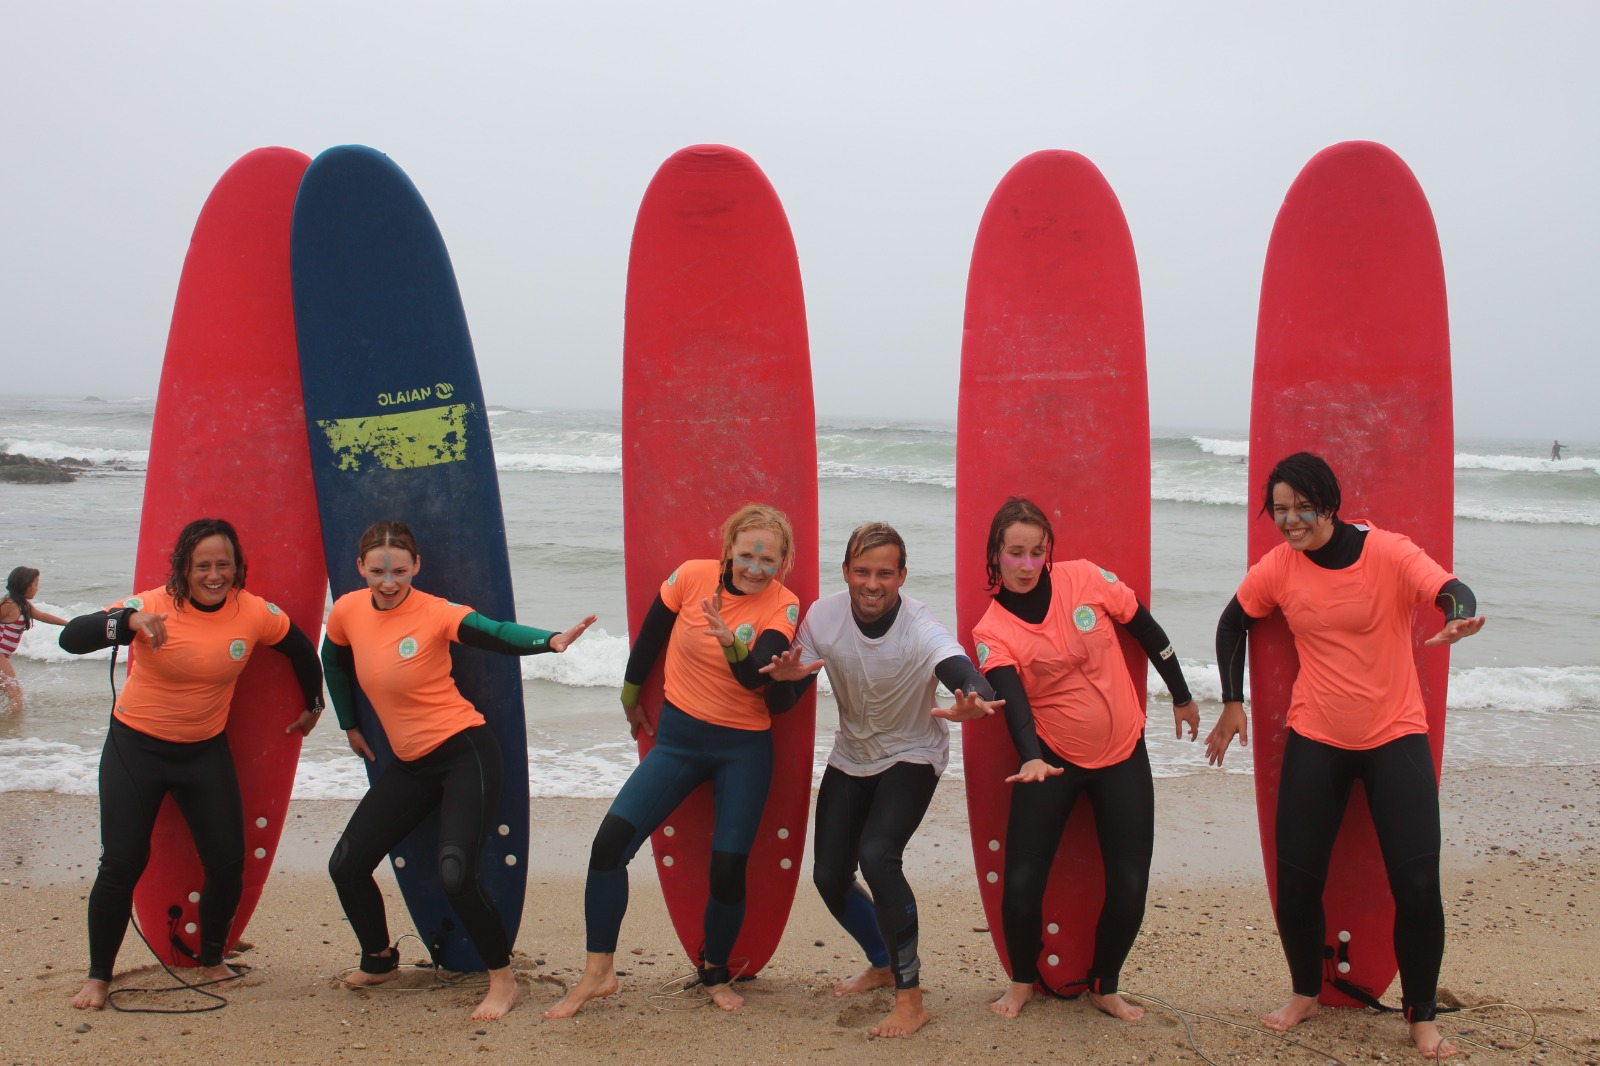 Surfing in Gaia - Starter surfboard